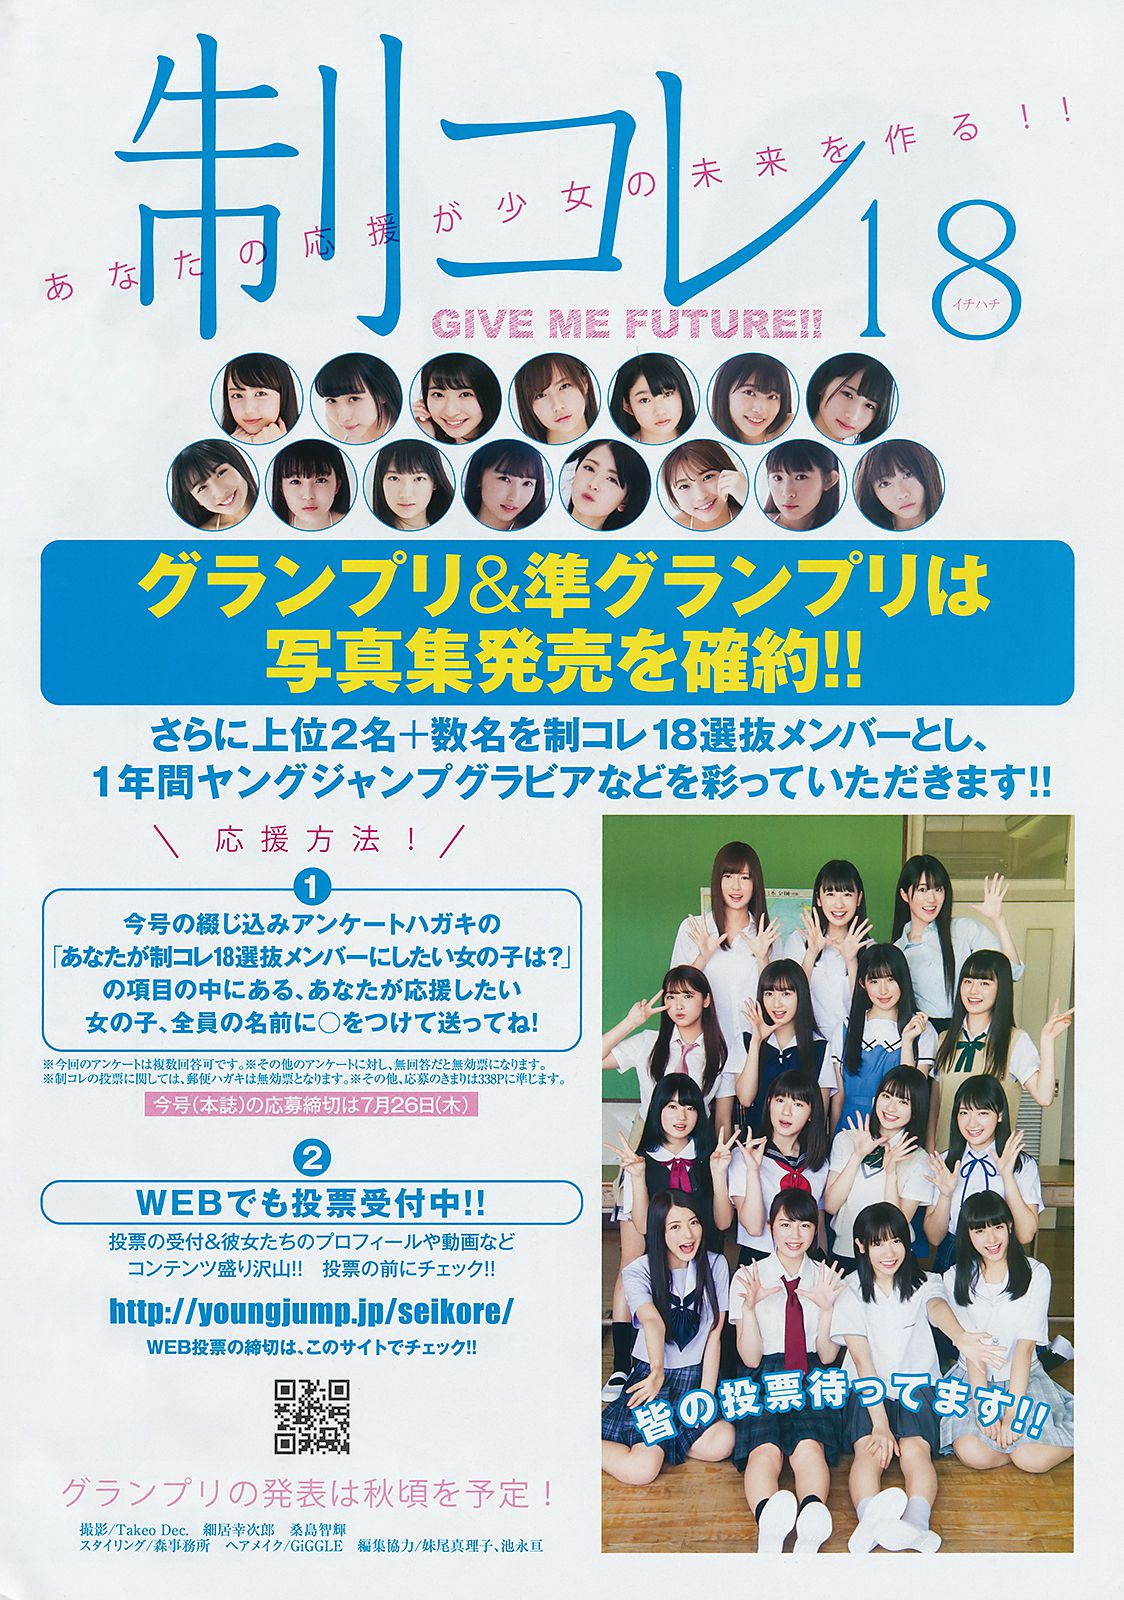 Enako Enako [Weekly Young Jump] 2018 No.32 Photograph Page 8 No.97c5f1